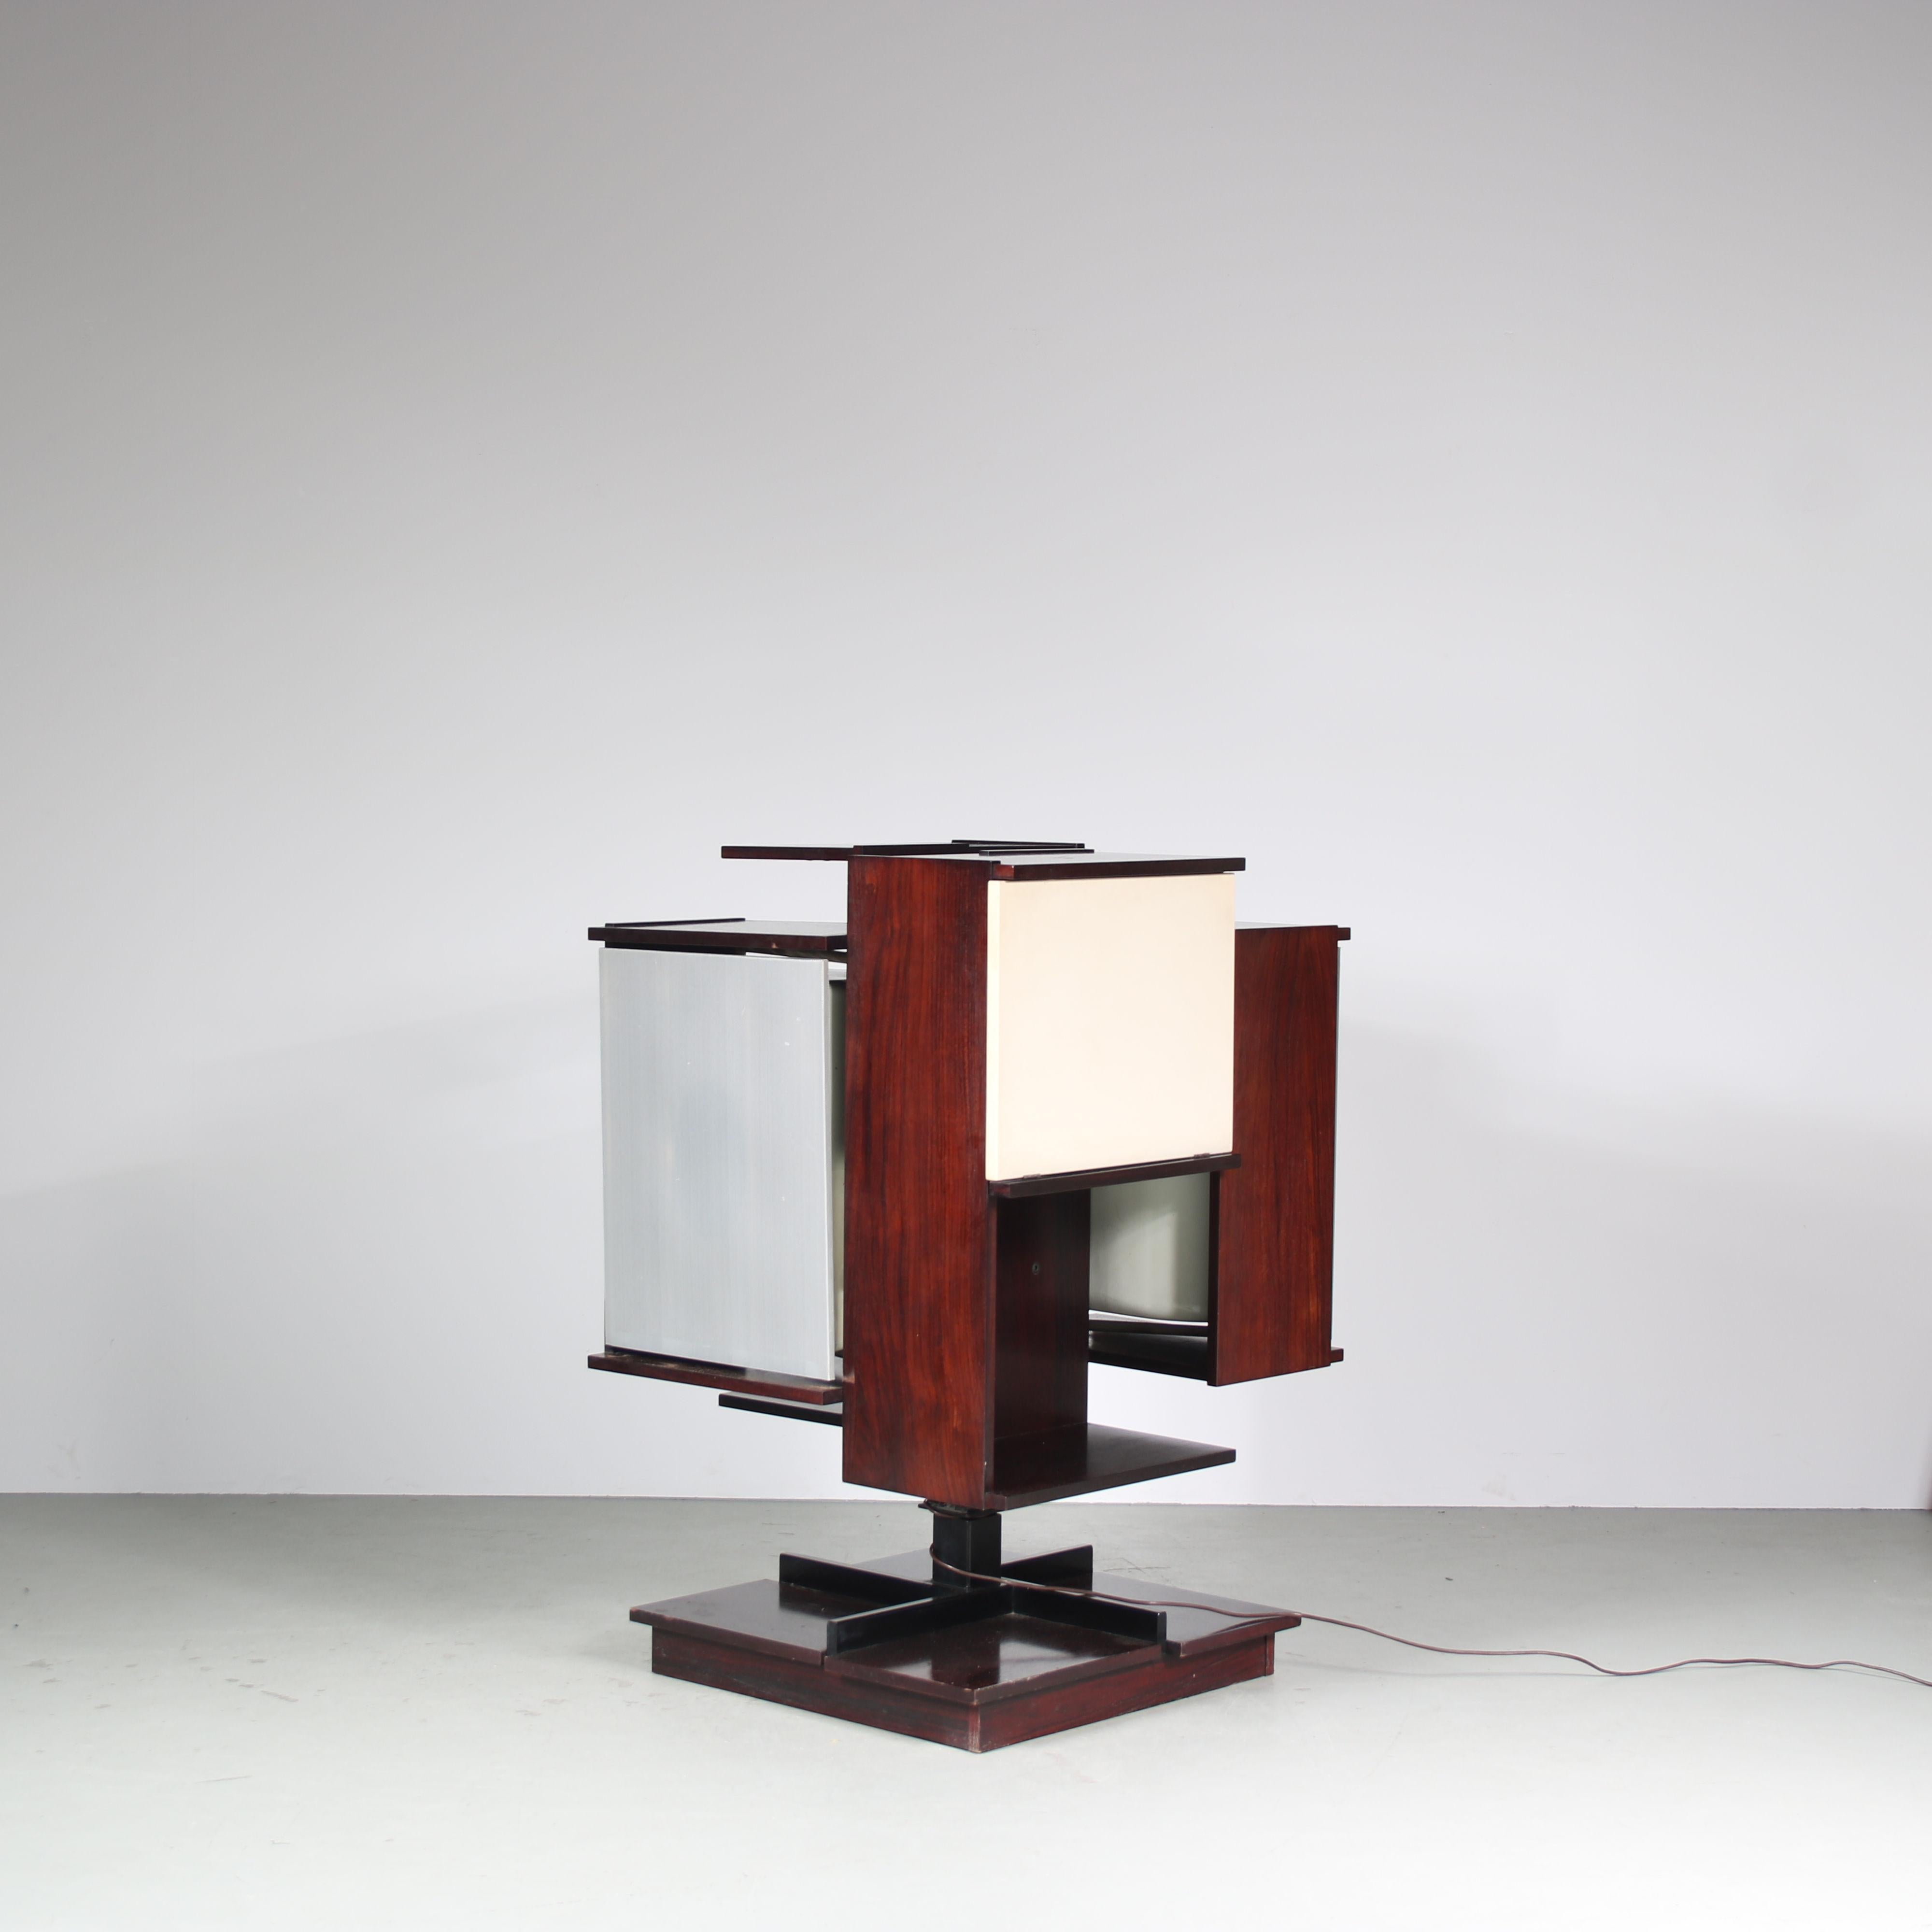 Eine fantastische HiFi-Box, entworfen von Claudio Salocchi, hergestellt von Sormani in Italien um 1960.

Dieses schöne und seltene Stück ist aus hochwertigem Palisanderholz gefertigt, wobei eine Tür weiß laminiert ist. Es  steht auf einem drehbaren